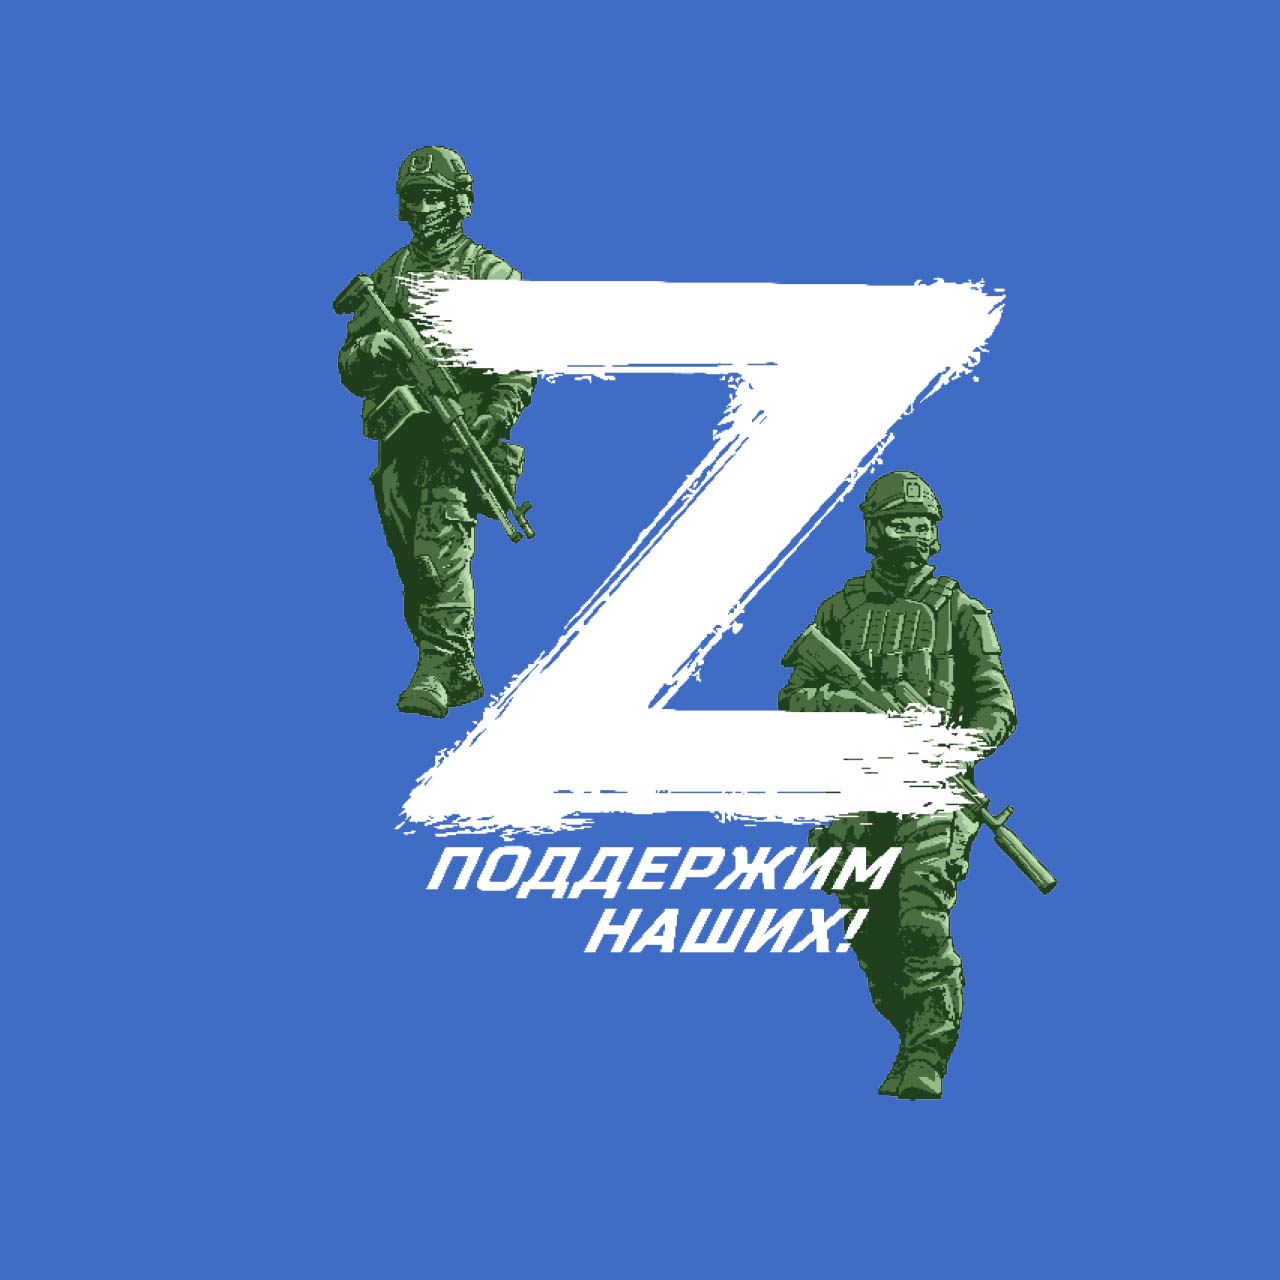 Вещи с символикой Z